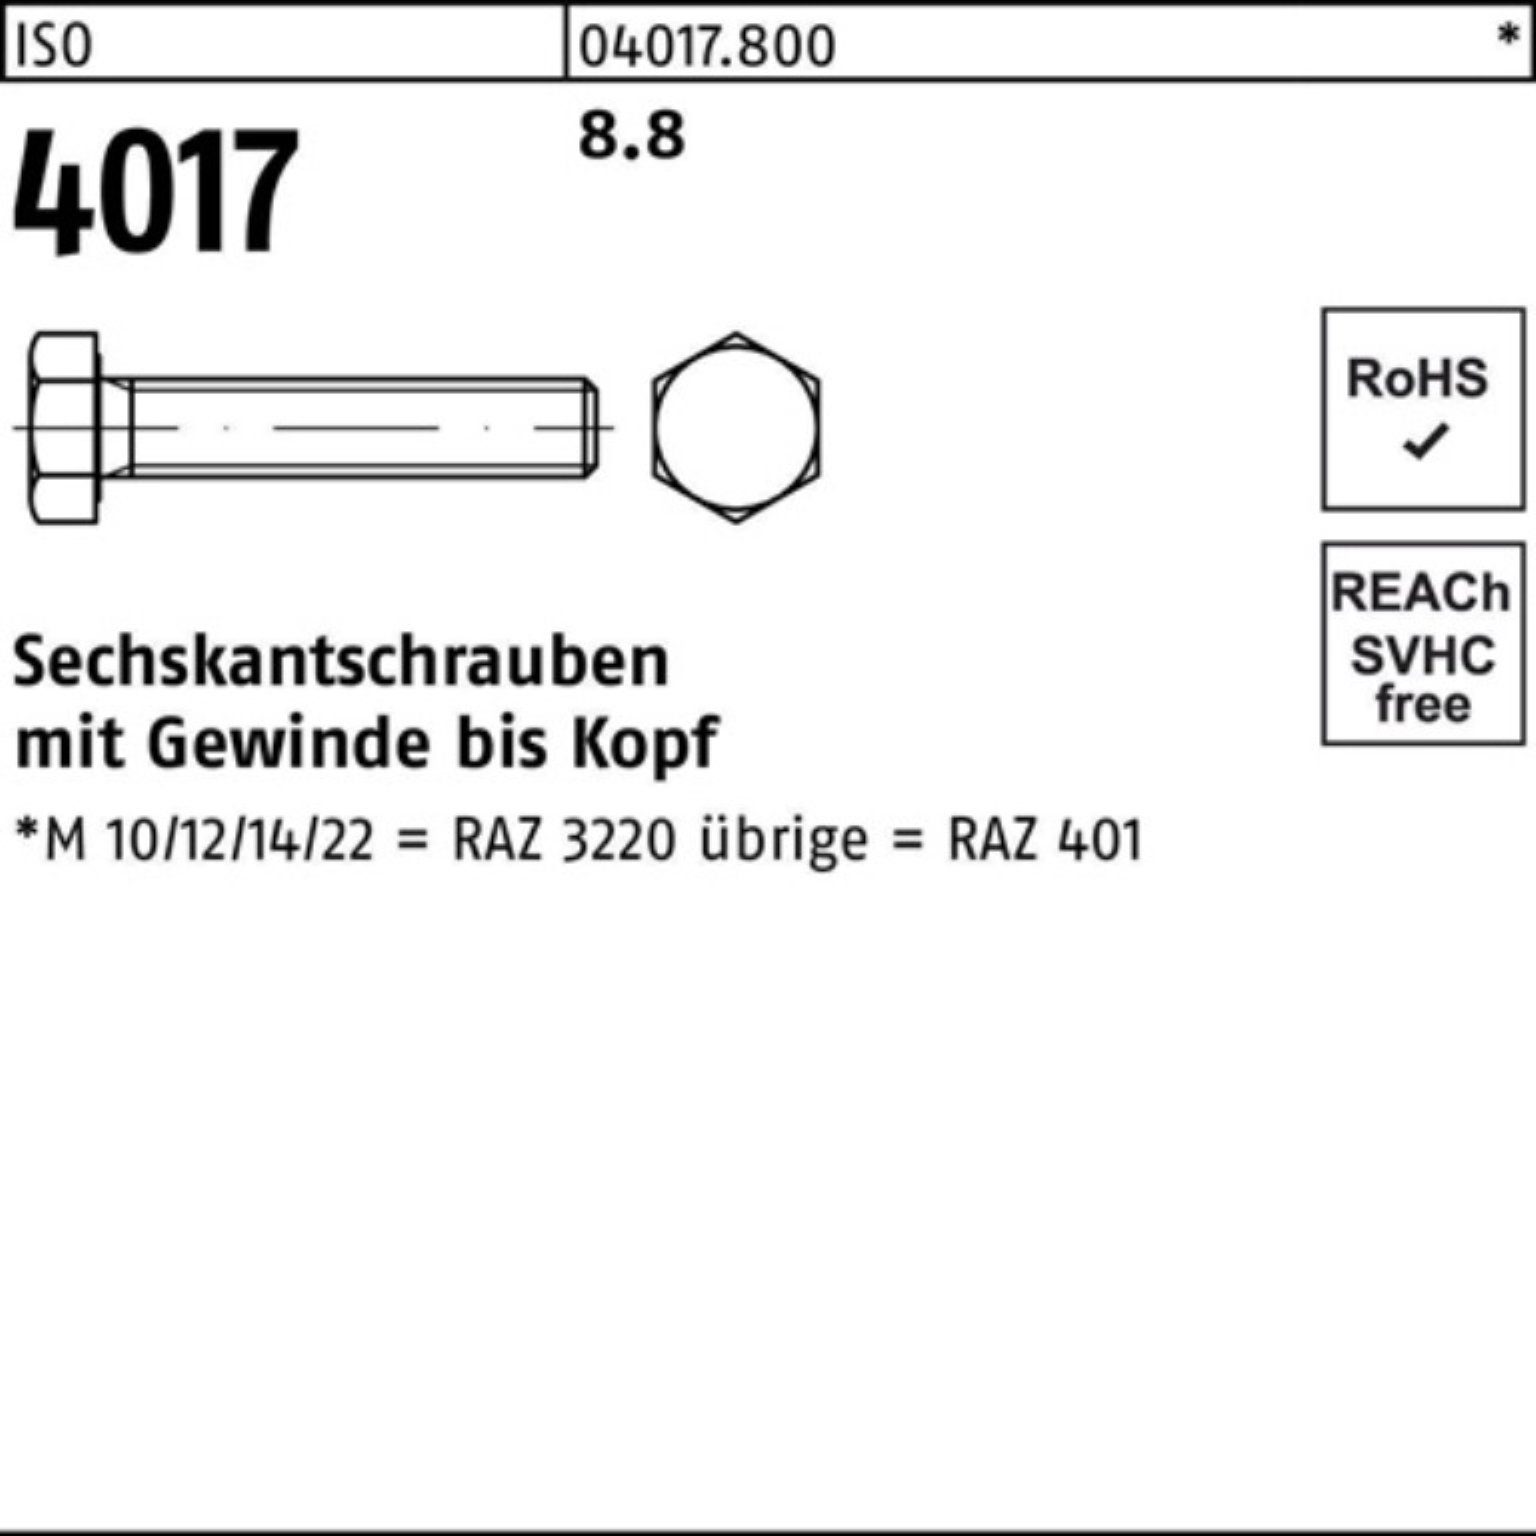 Bufab Sechskantschraube 100er Pack VG M30x 4017 Stück 4017 1 ISO Sechskantschraube ISO 8.8 80